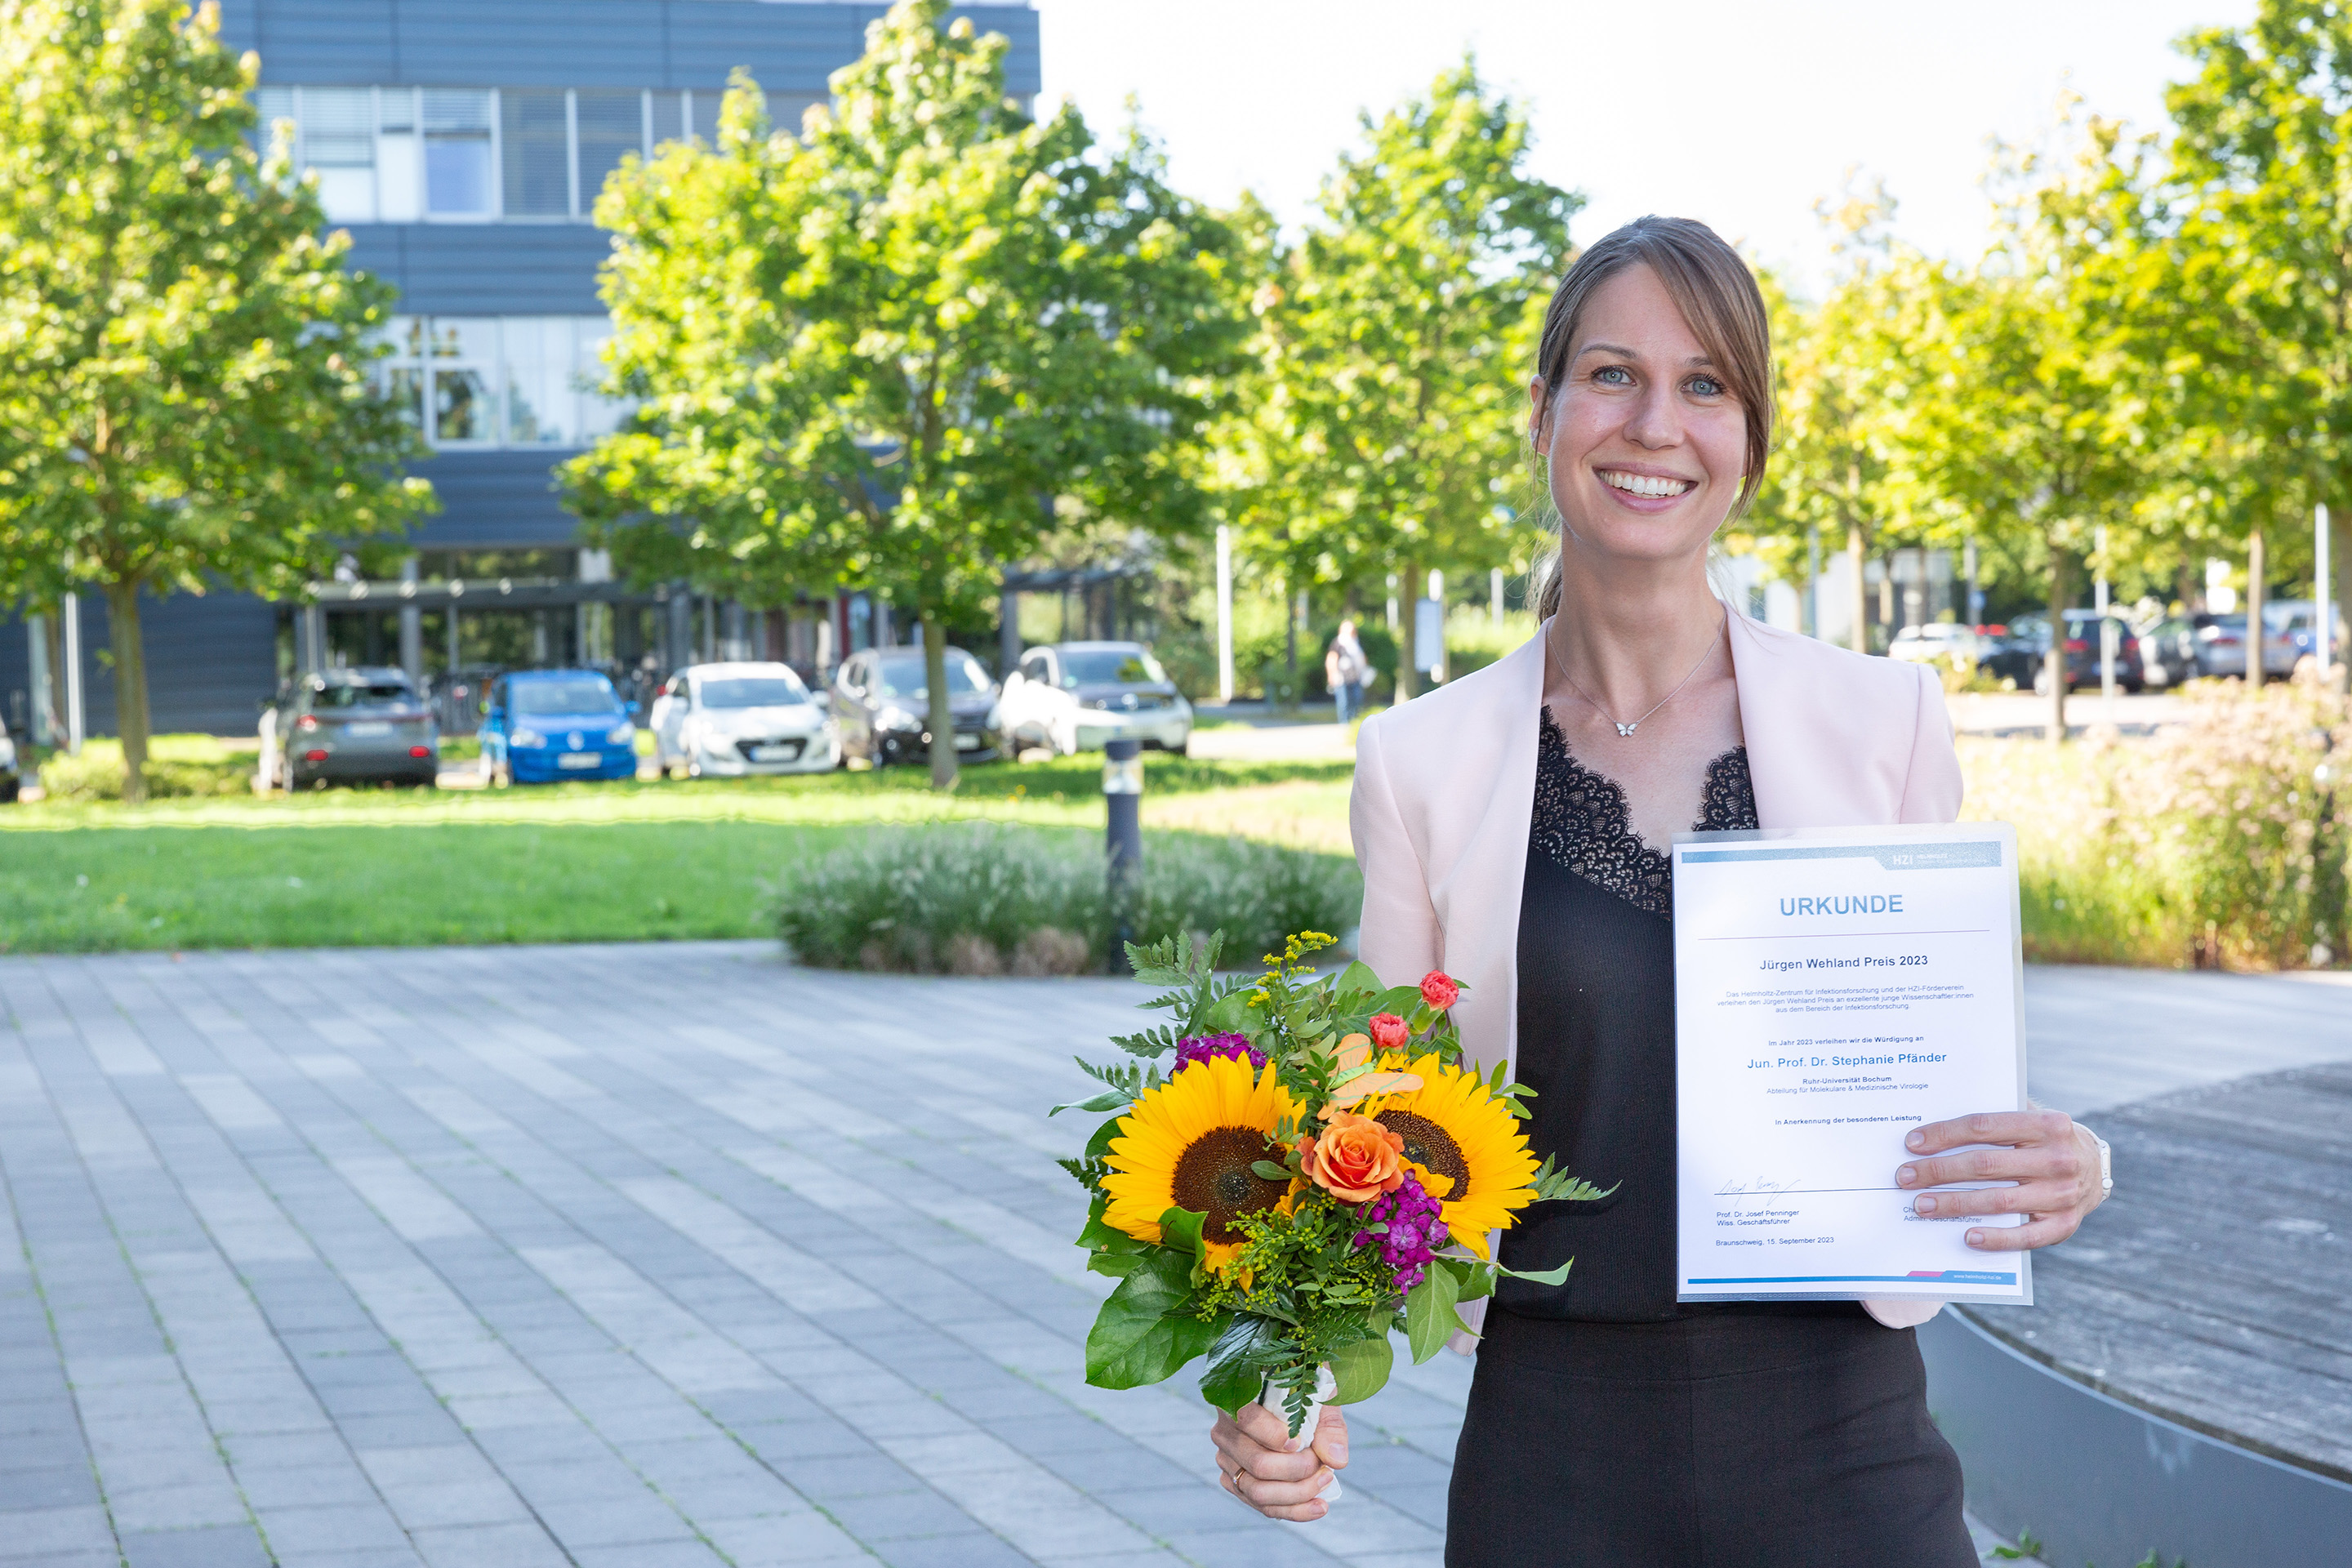 Stephanie Pfänder, winner of this year's Jürgen Wehland Award.